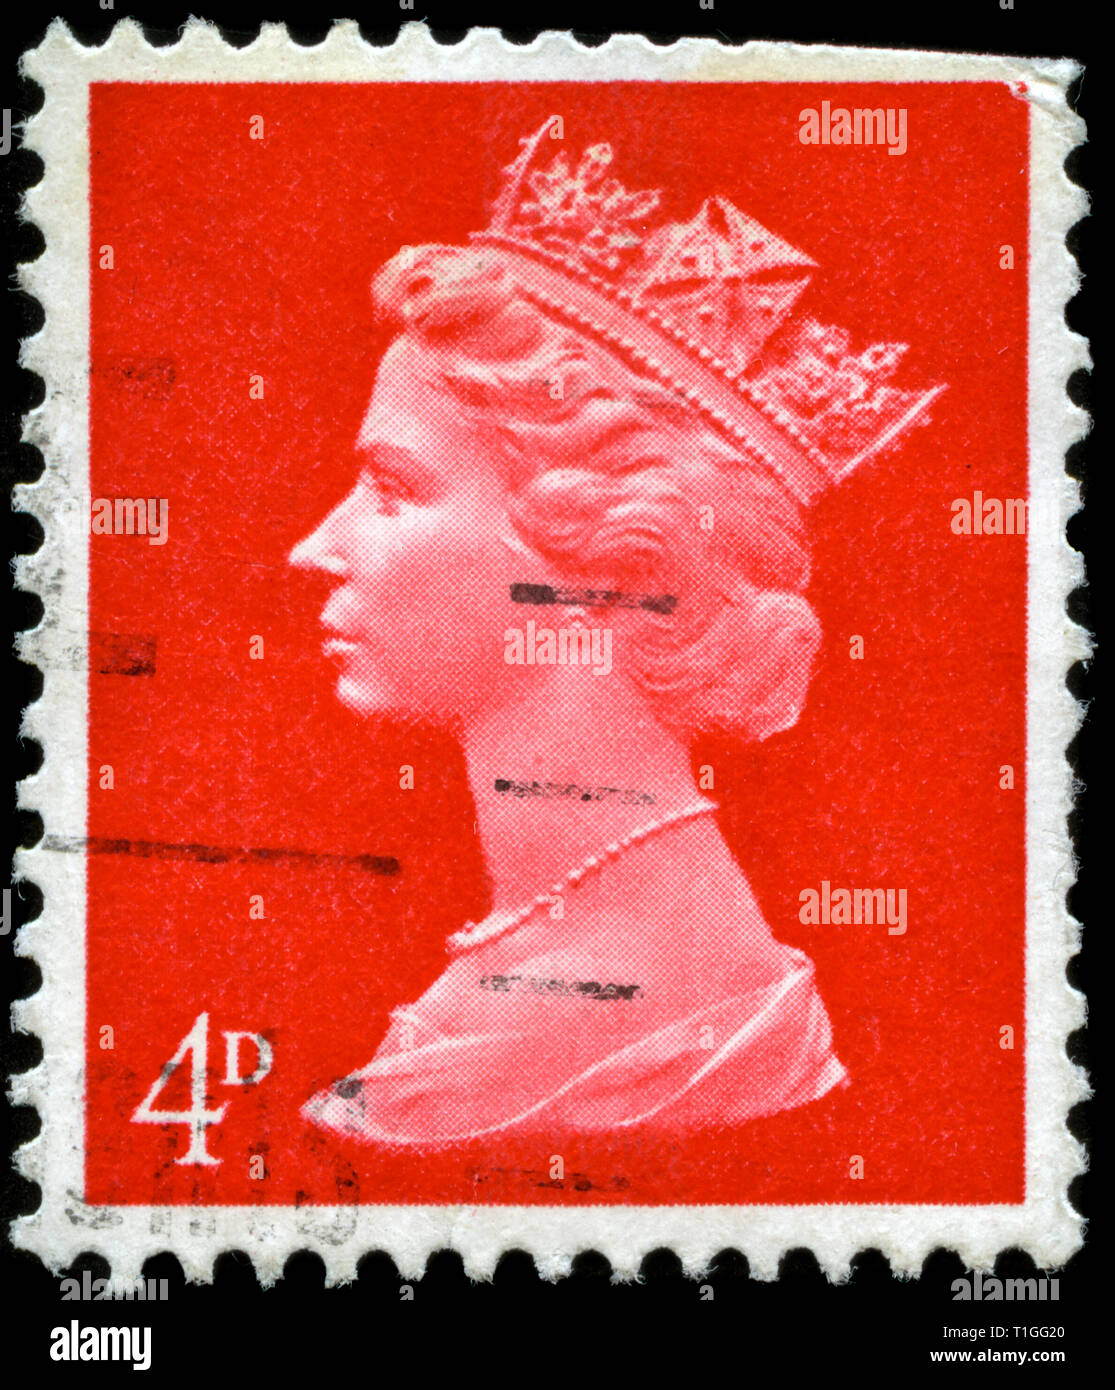 Francobollo da Regno Unito e Irlanda del Nord nel Queen Elizabeth II - Predecimal Machin serie rilasciato in 1969 Foto Stock